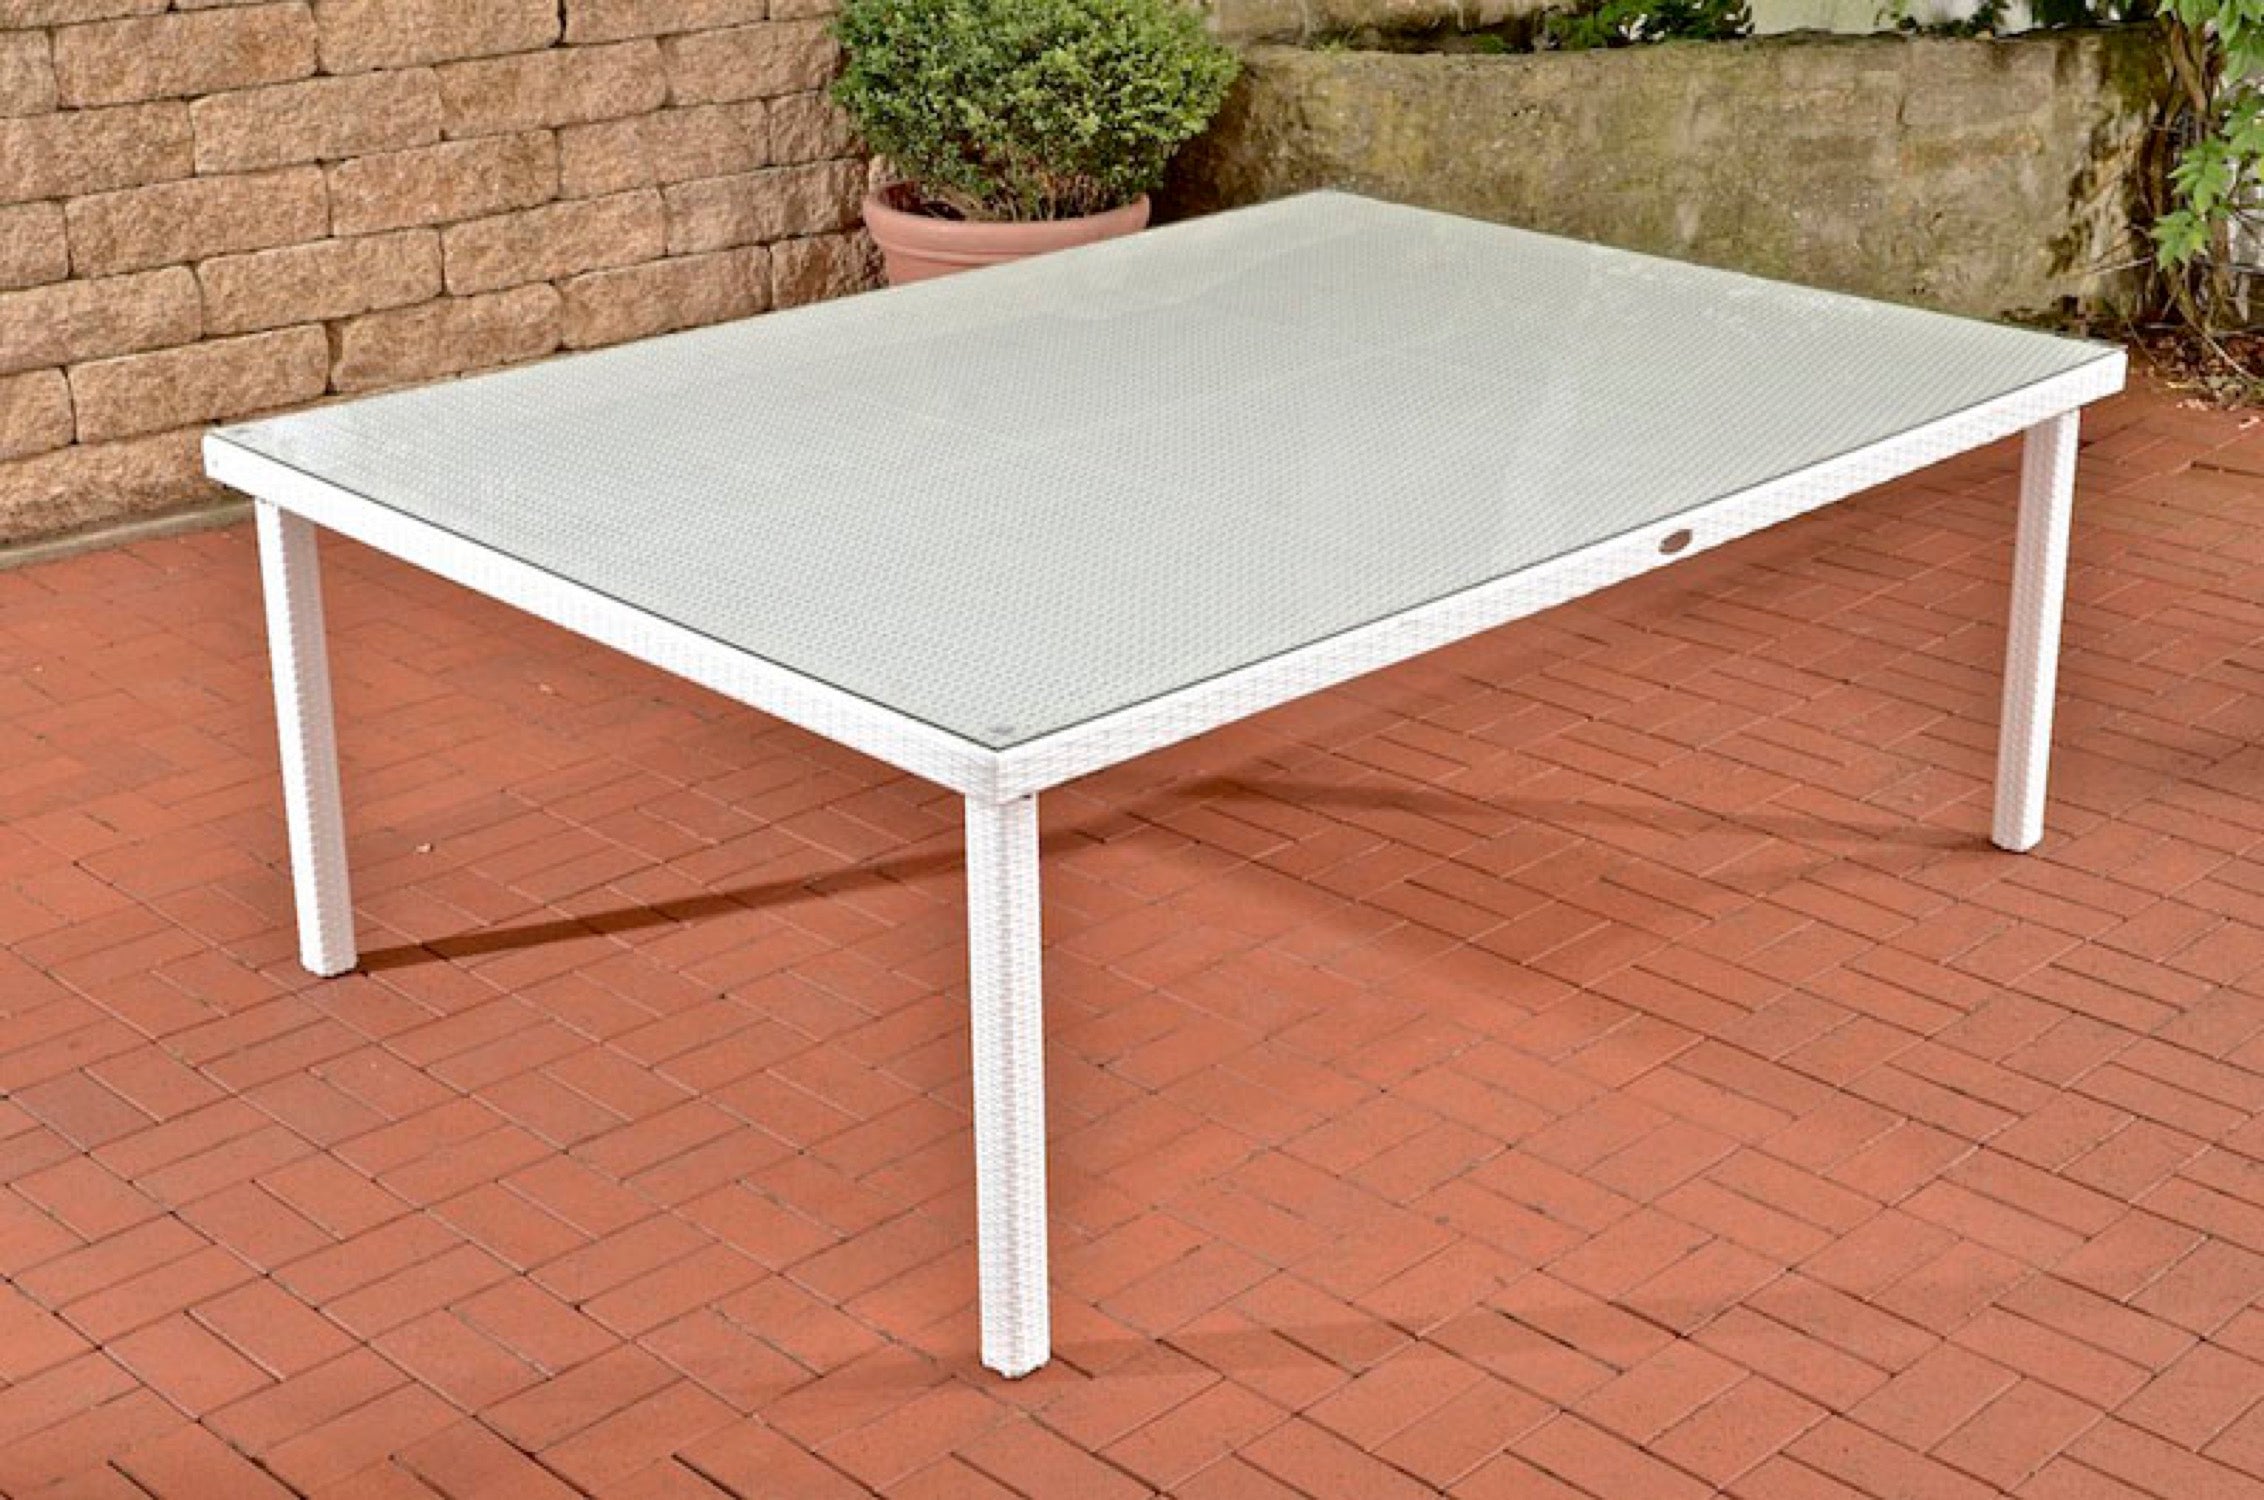 TPFGarden garden table Pizera 210x150 cm white – Traumpreisfabrik